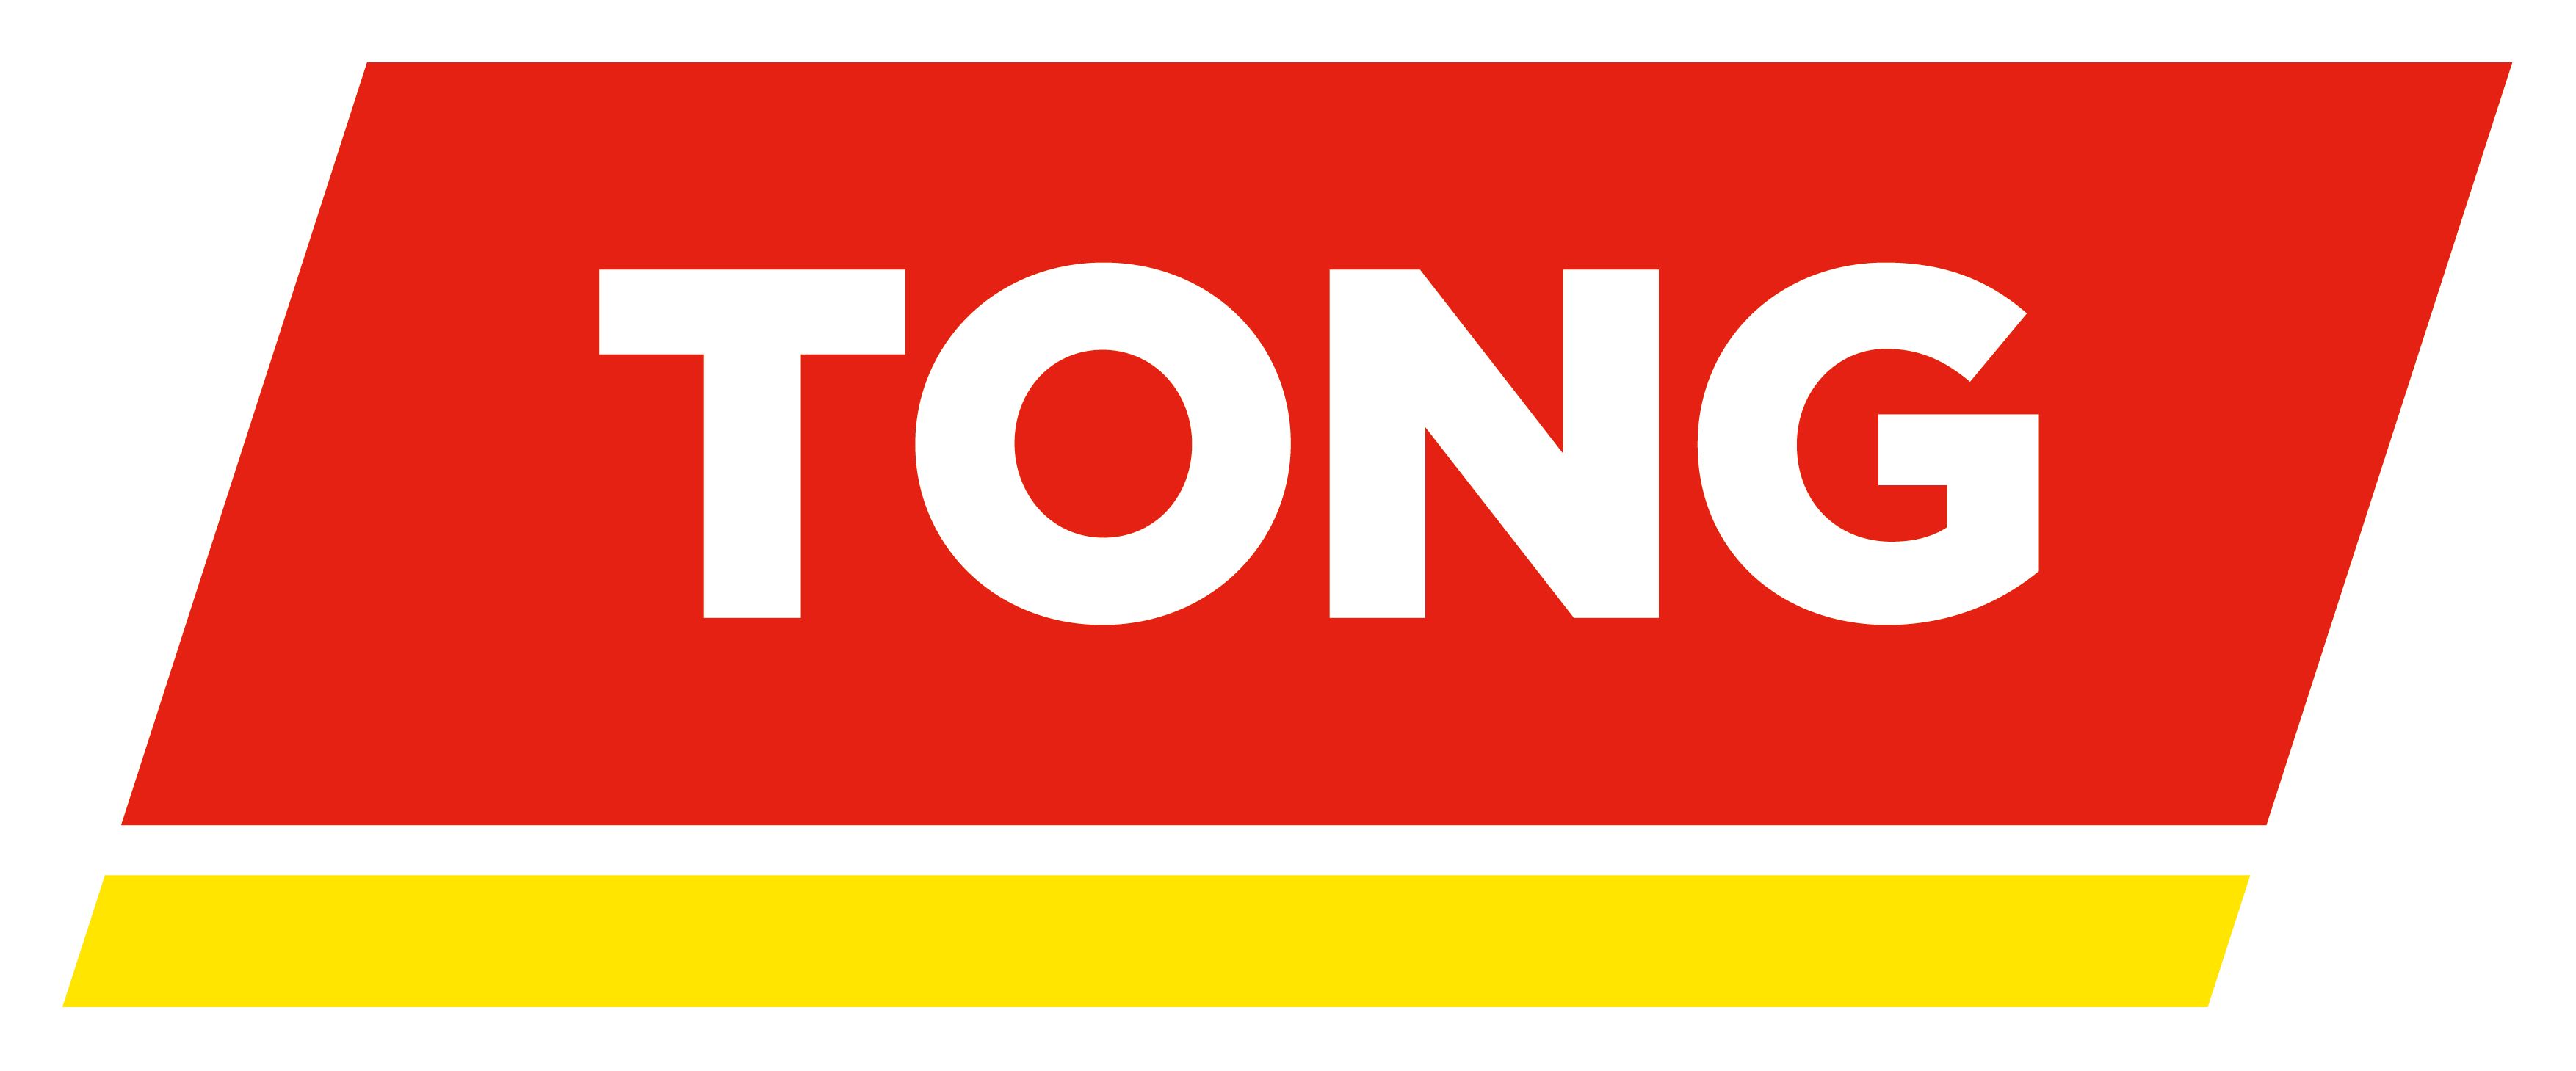 Tong Engineering